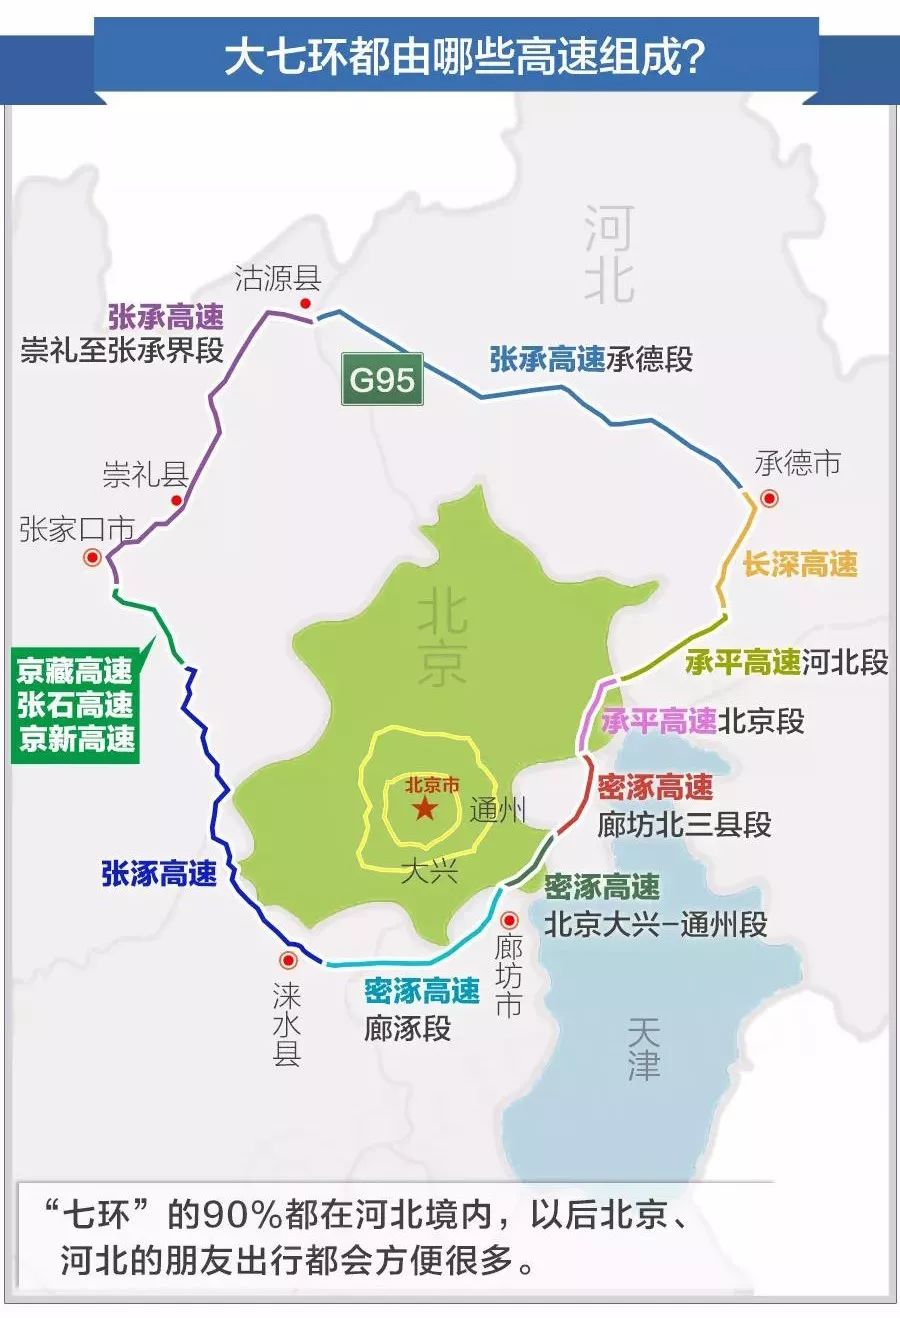 北京七环路线路图图片